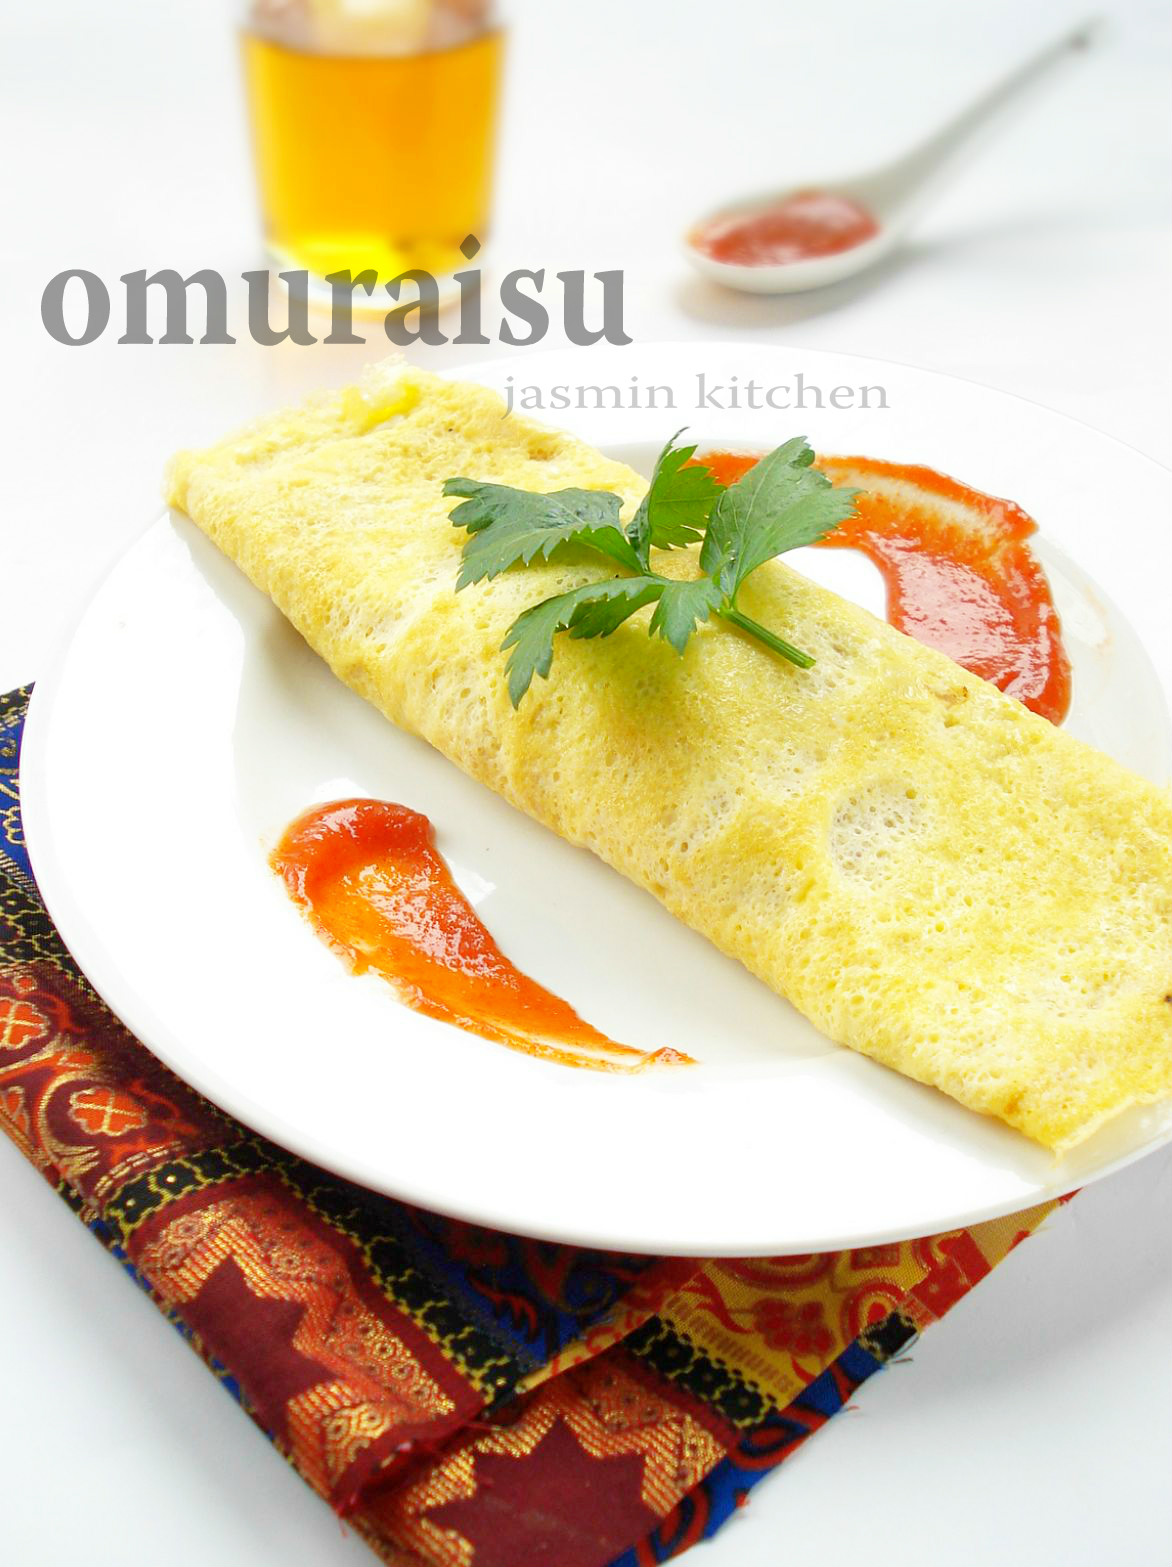 jasmin's kitchen: Omurice aka omuraisu